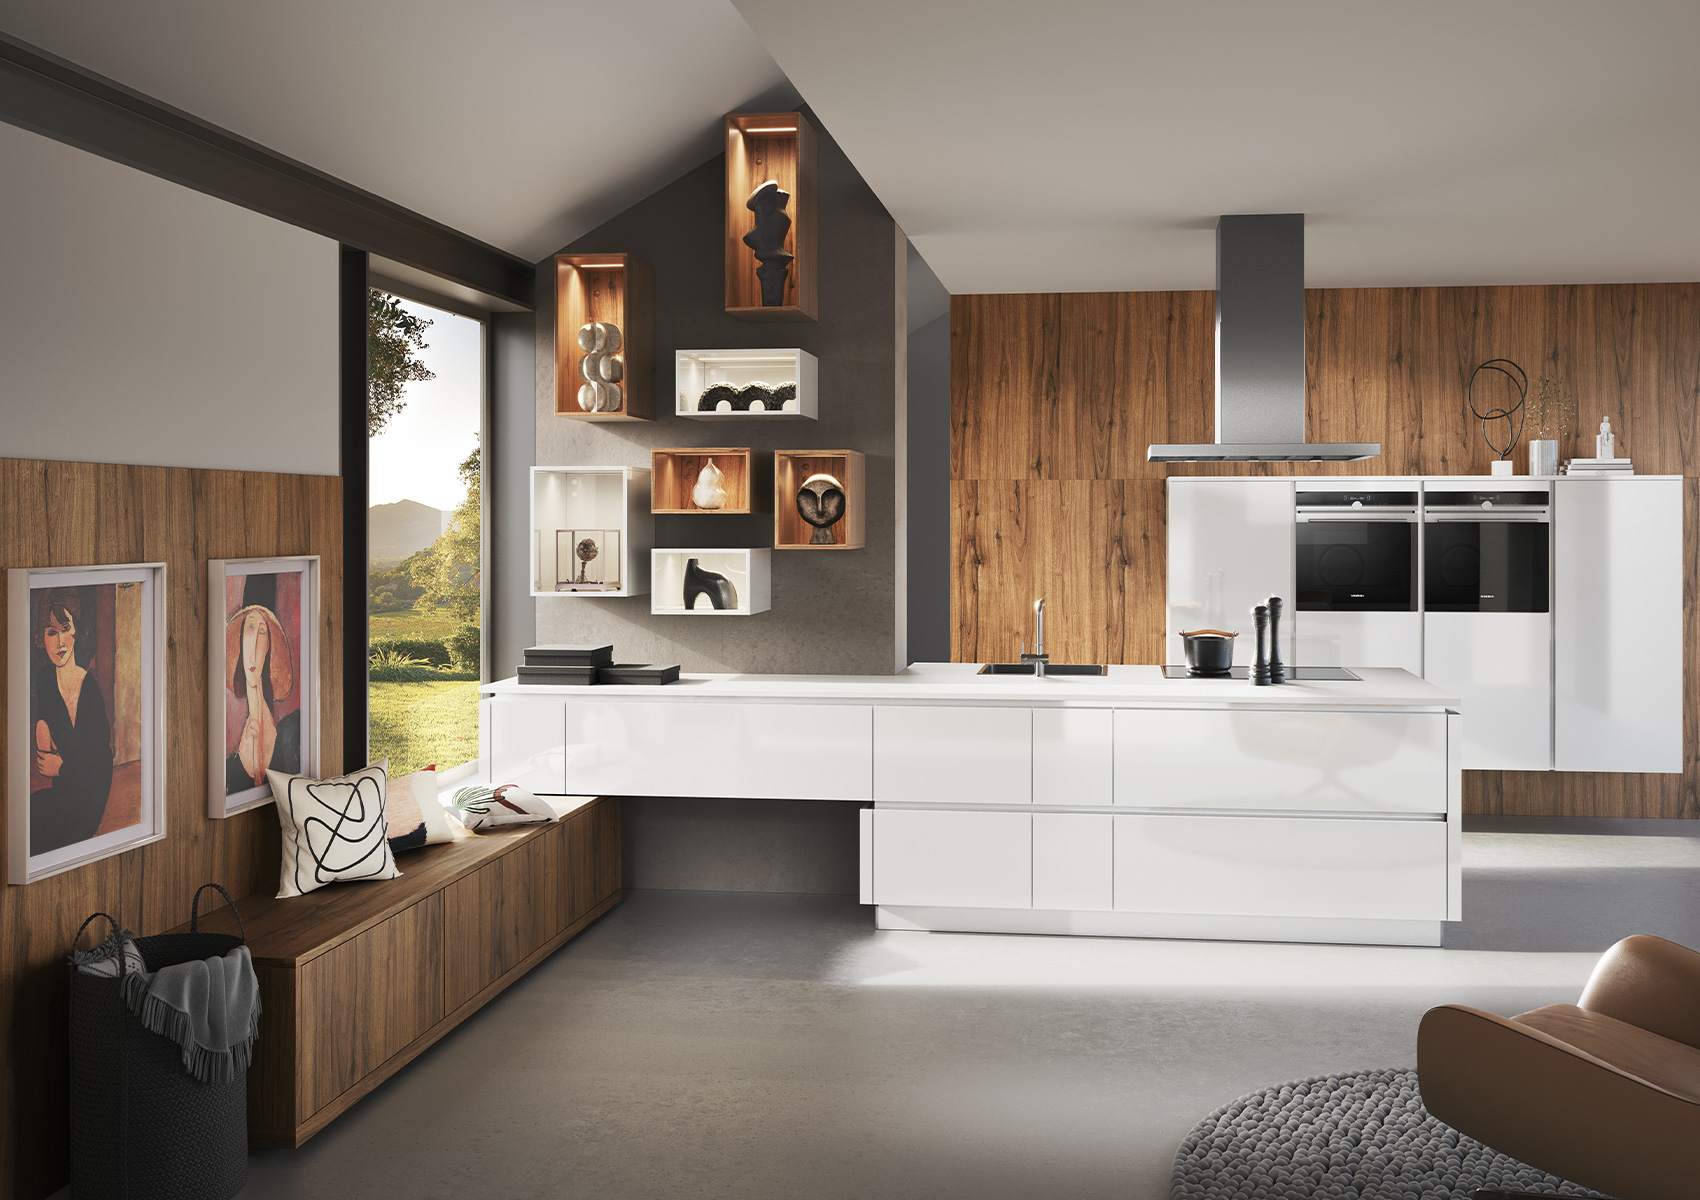 Küche mit Kochinsel und Sitzbank in weiß glänzend und Holzoptik